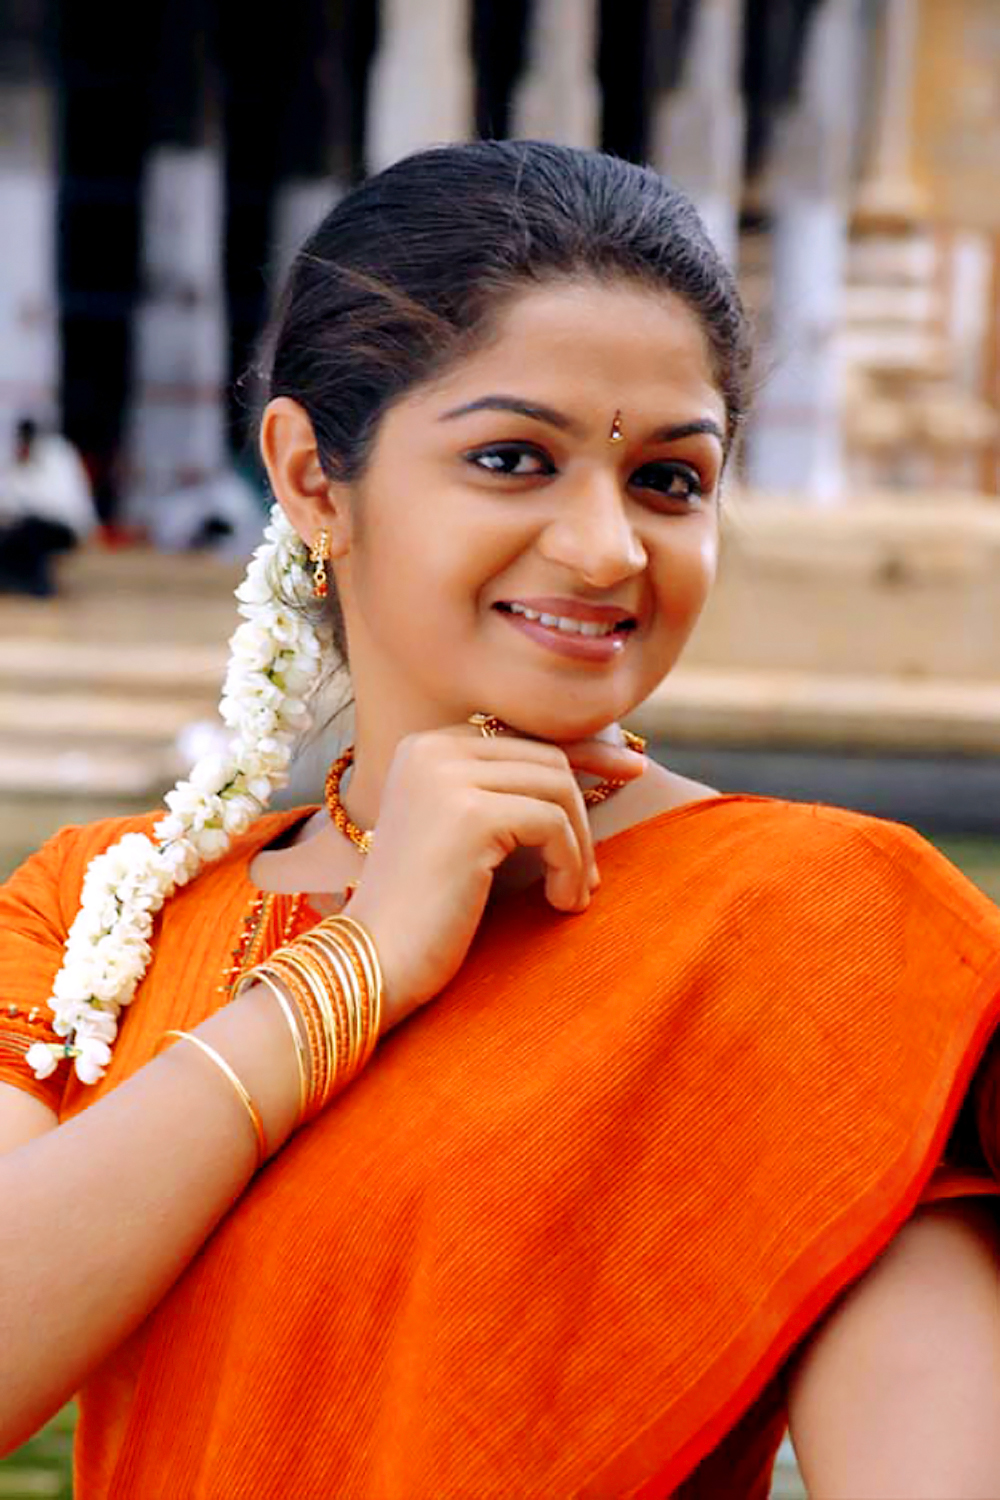 Malayalam Actress Hot Photos Without Makeup Hot Navel In